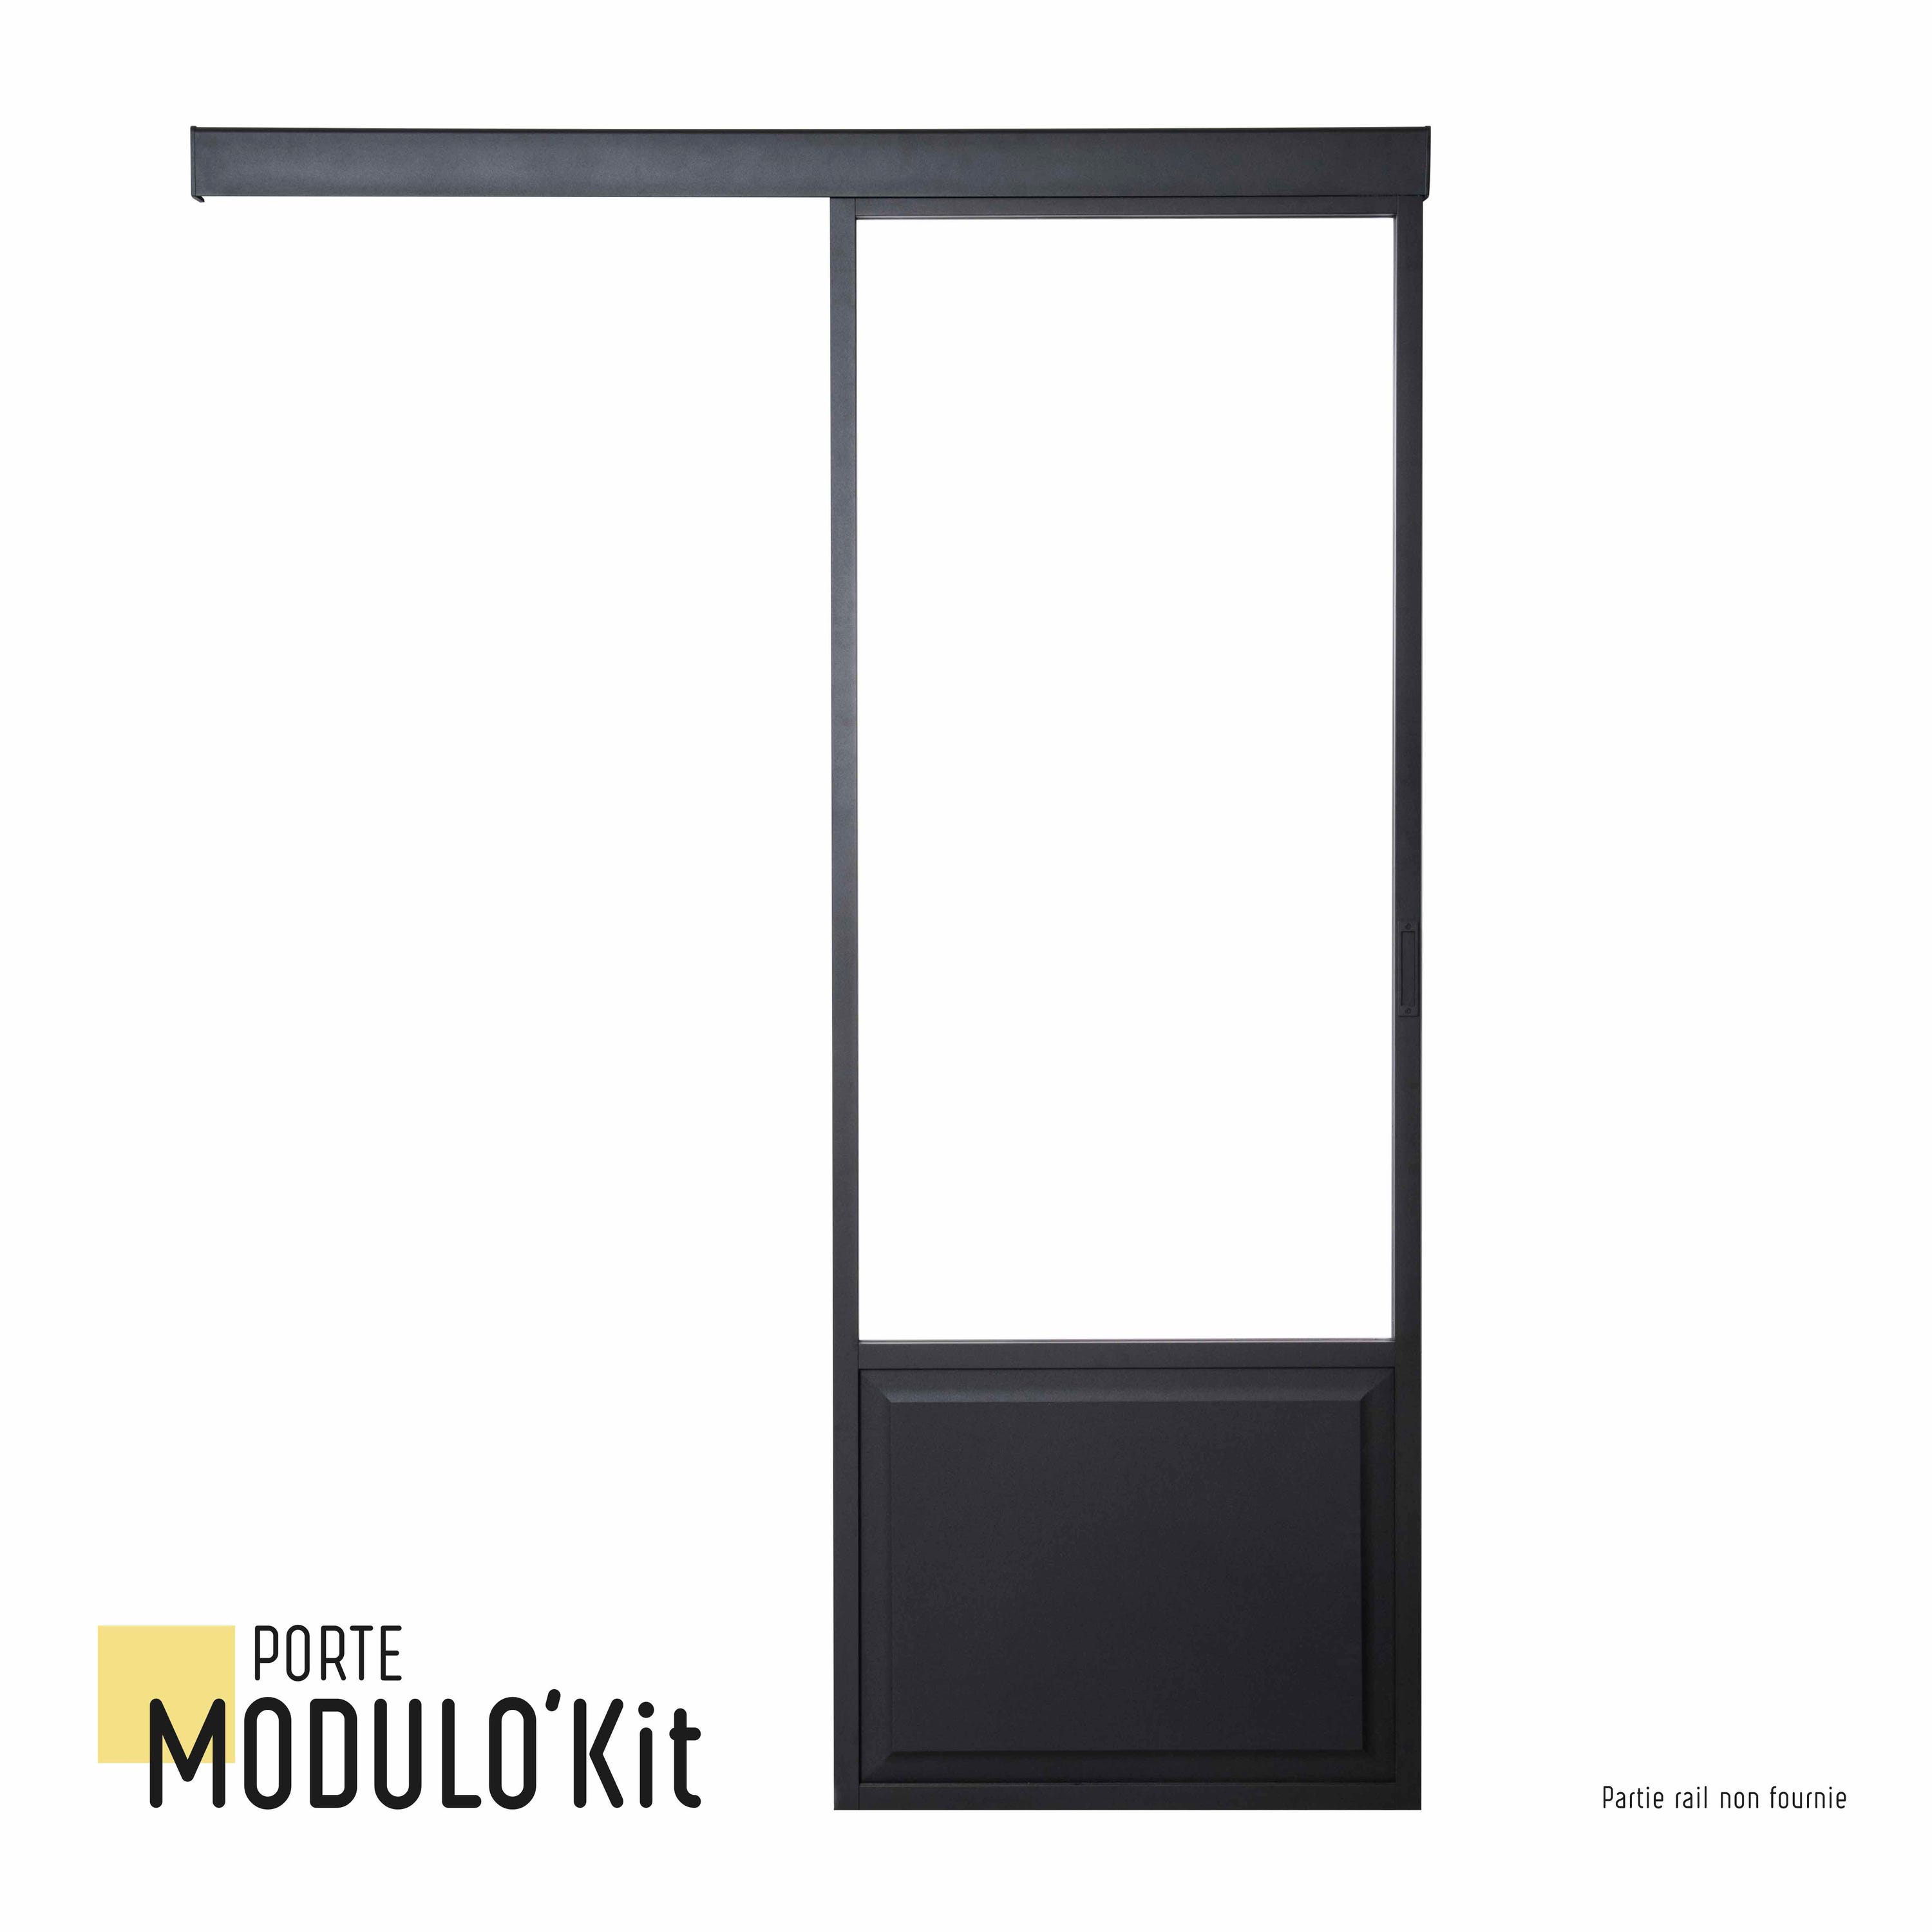 Porte coulissante personnalisable aluminium + verre + mdf Atelier vitrée,  H.204, Leroy Merlin